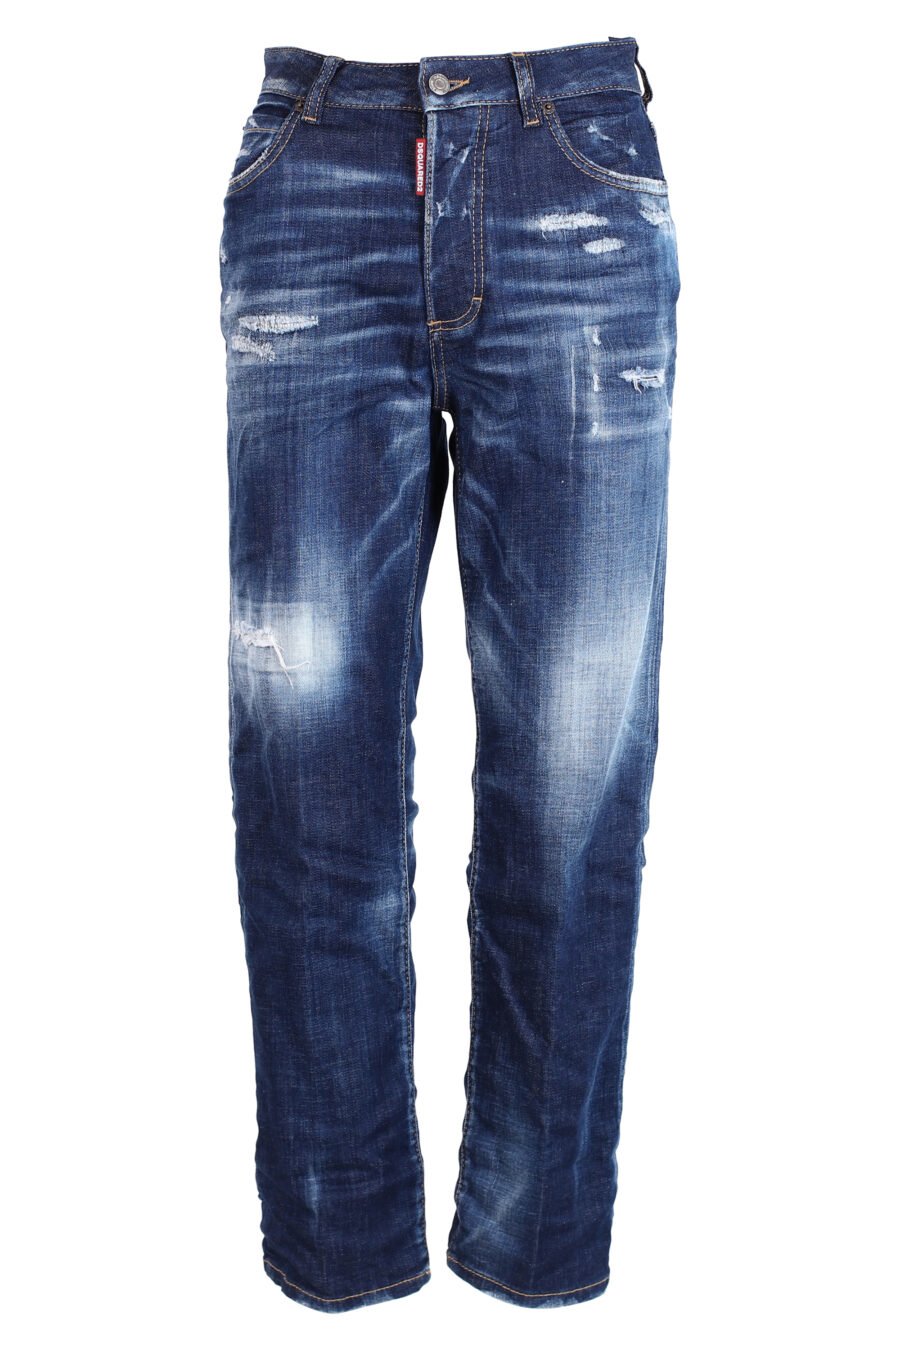 Pantalón vaquero "Boston Jean" azul - IMG 3303